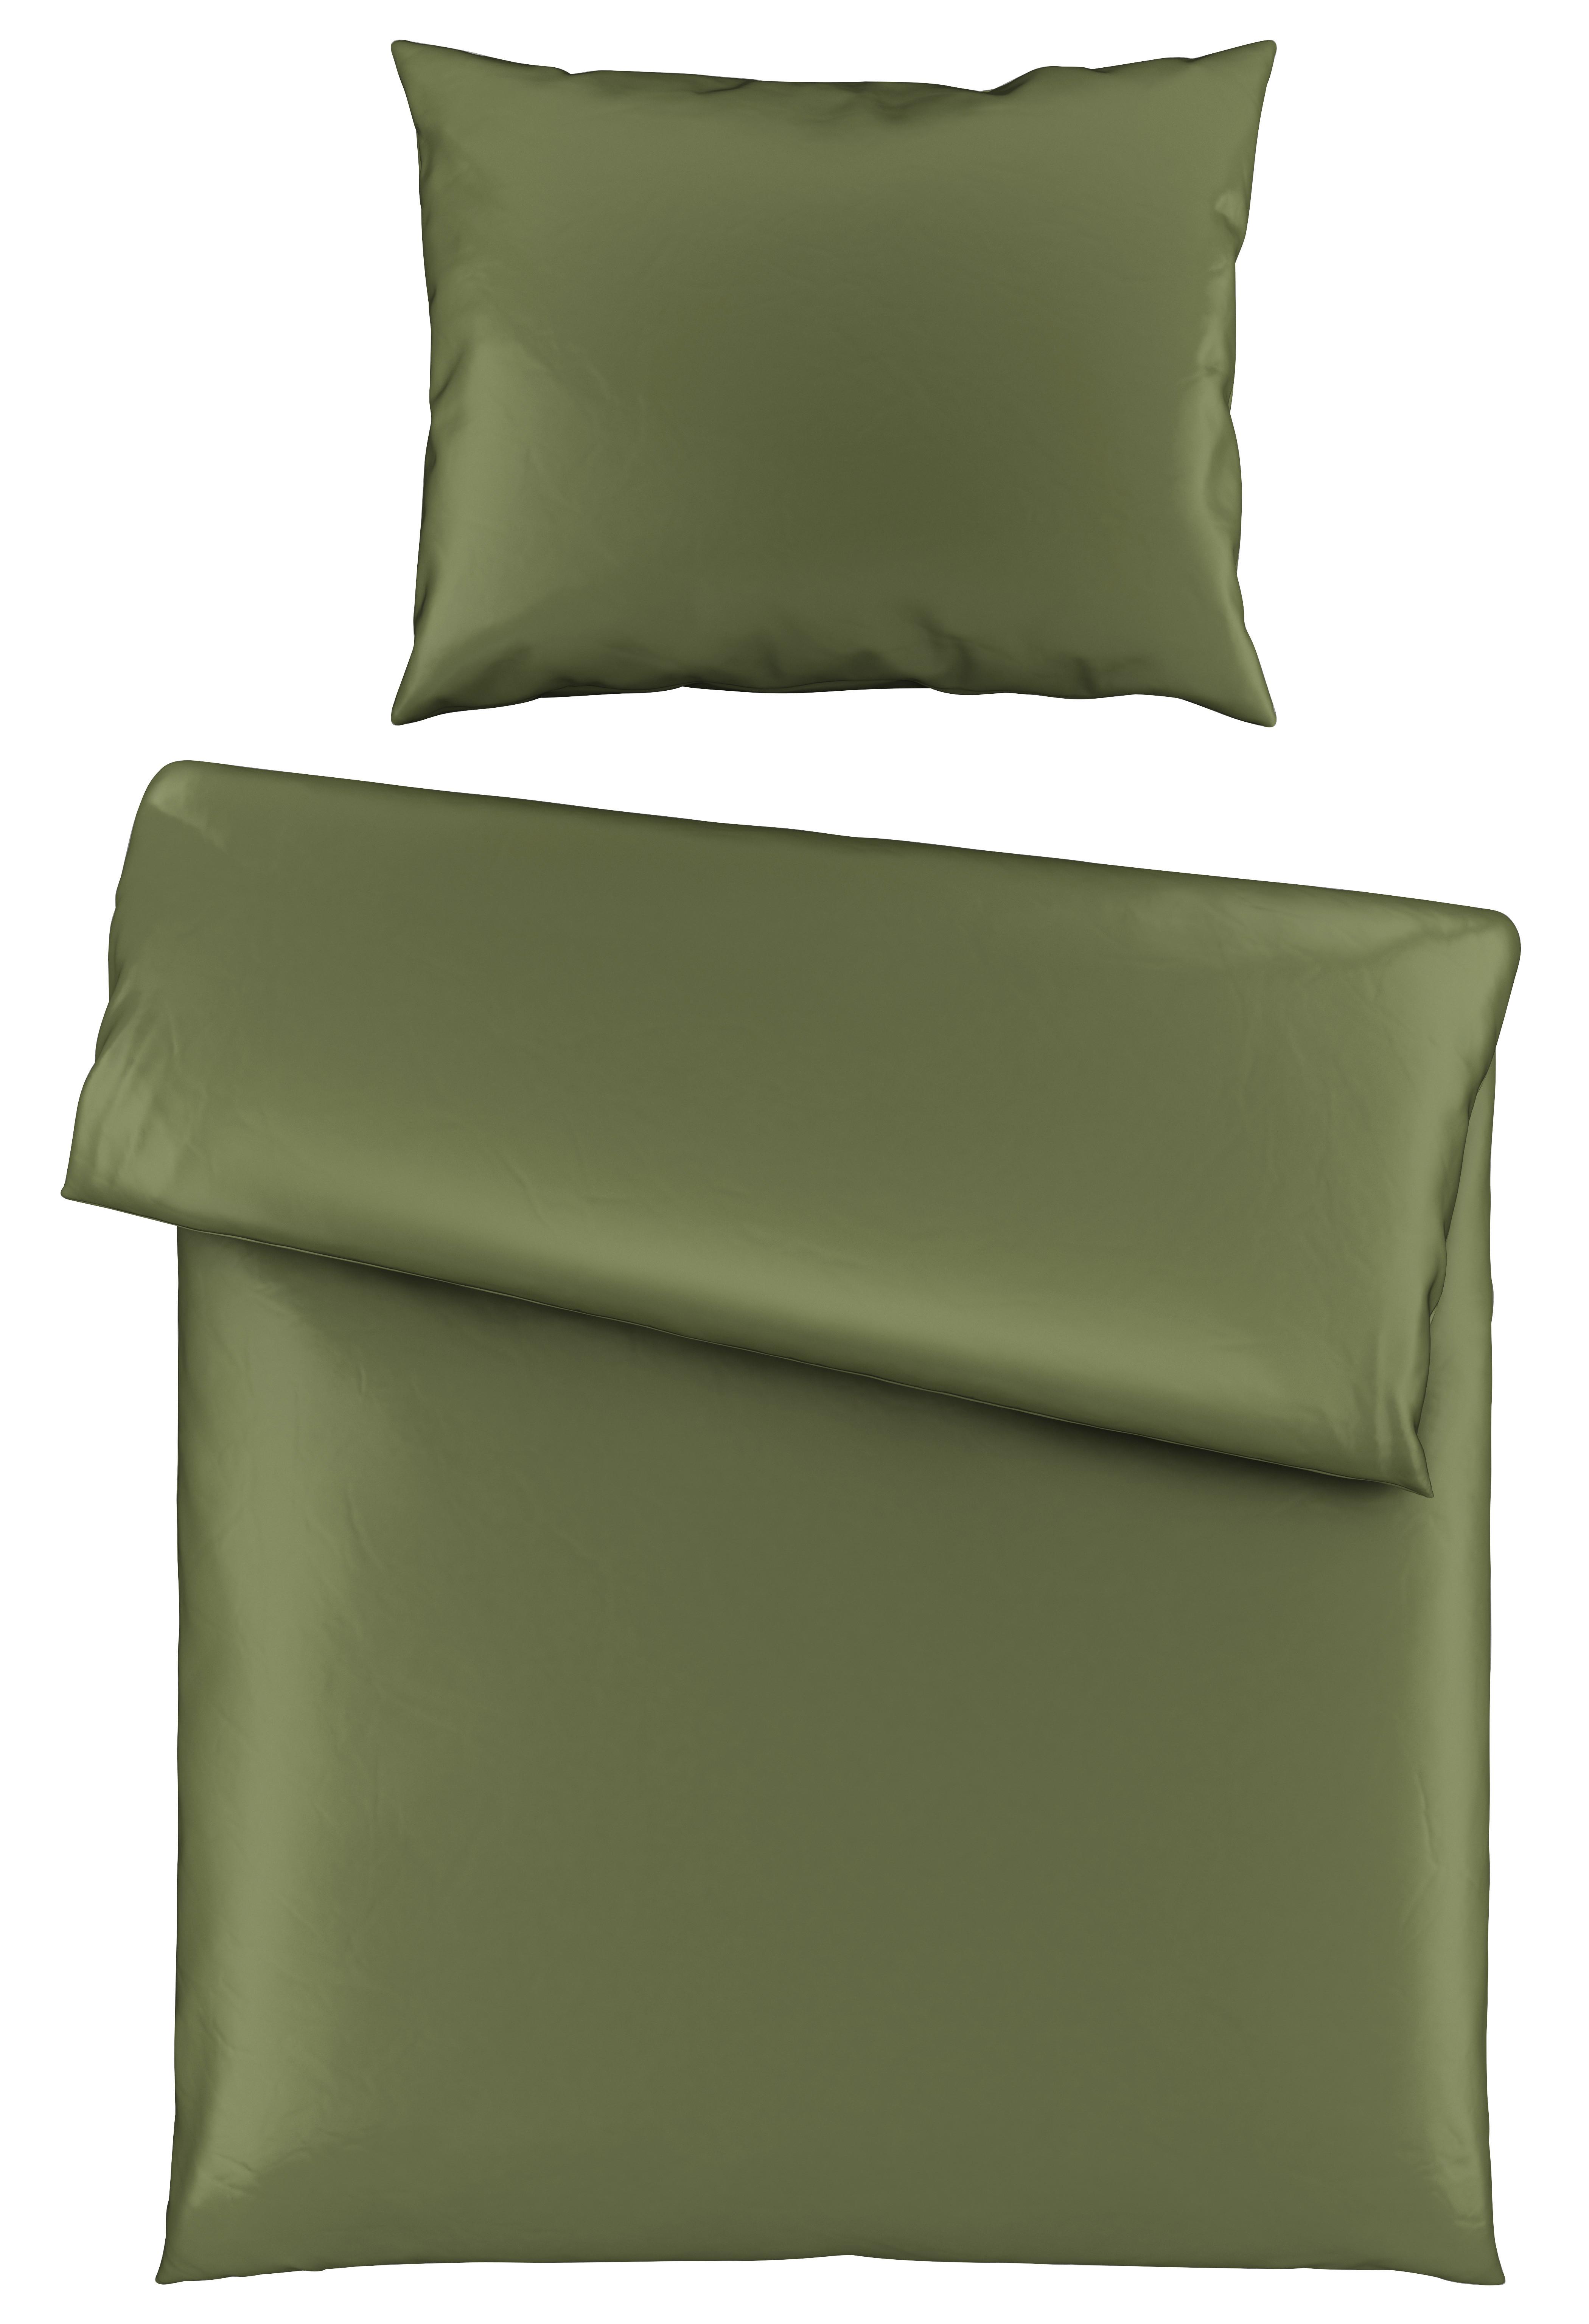 Posteľná Bielizeň Alex Uni, 140/200cm, Zelená - olivovozelená, Moderný, textil (140/200cm) - Premium Living